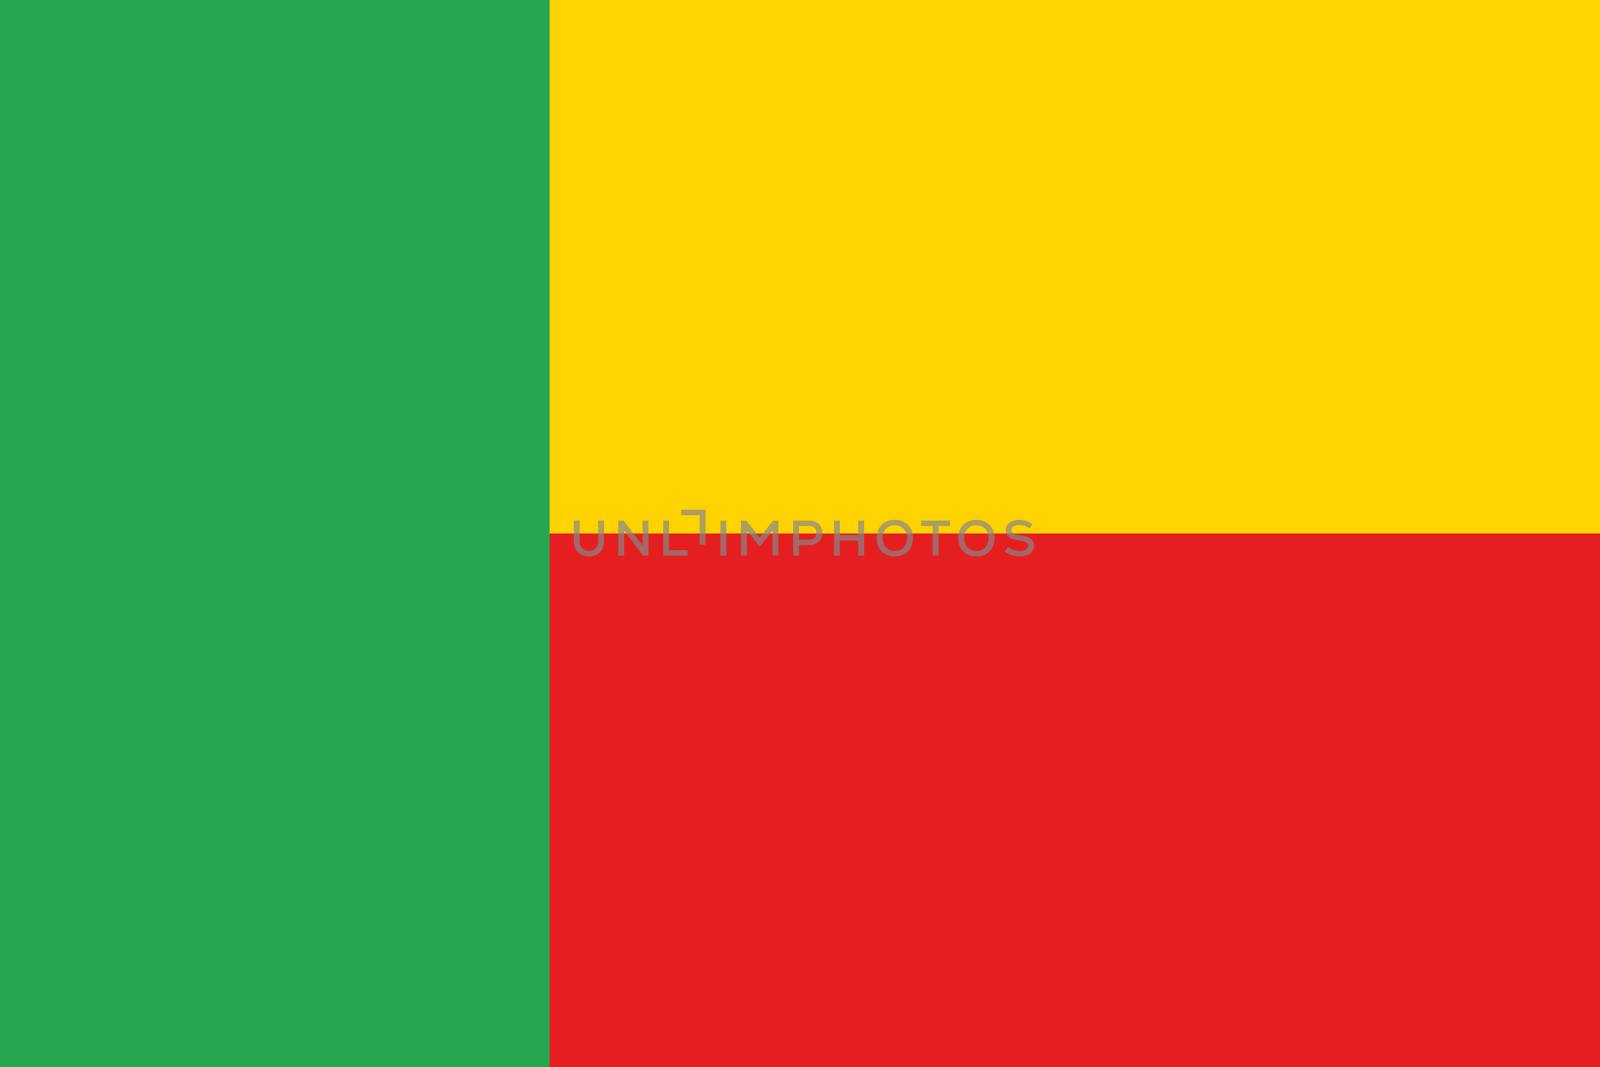 An illustration of the flag of Benin